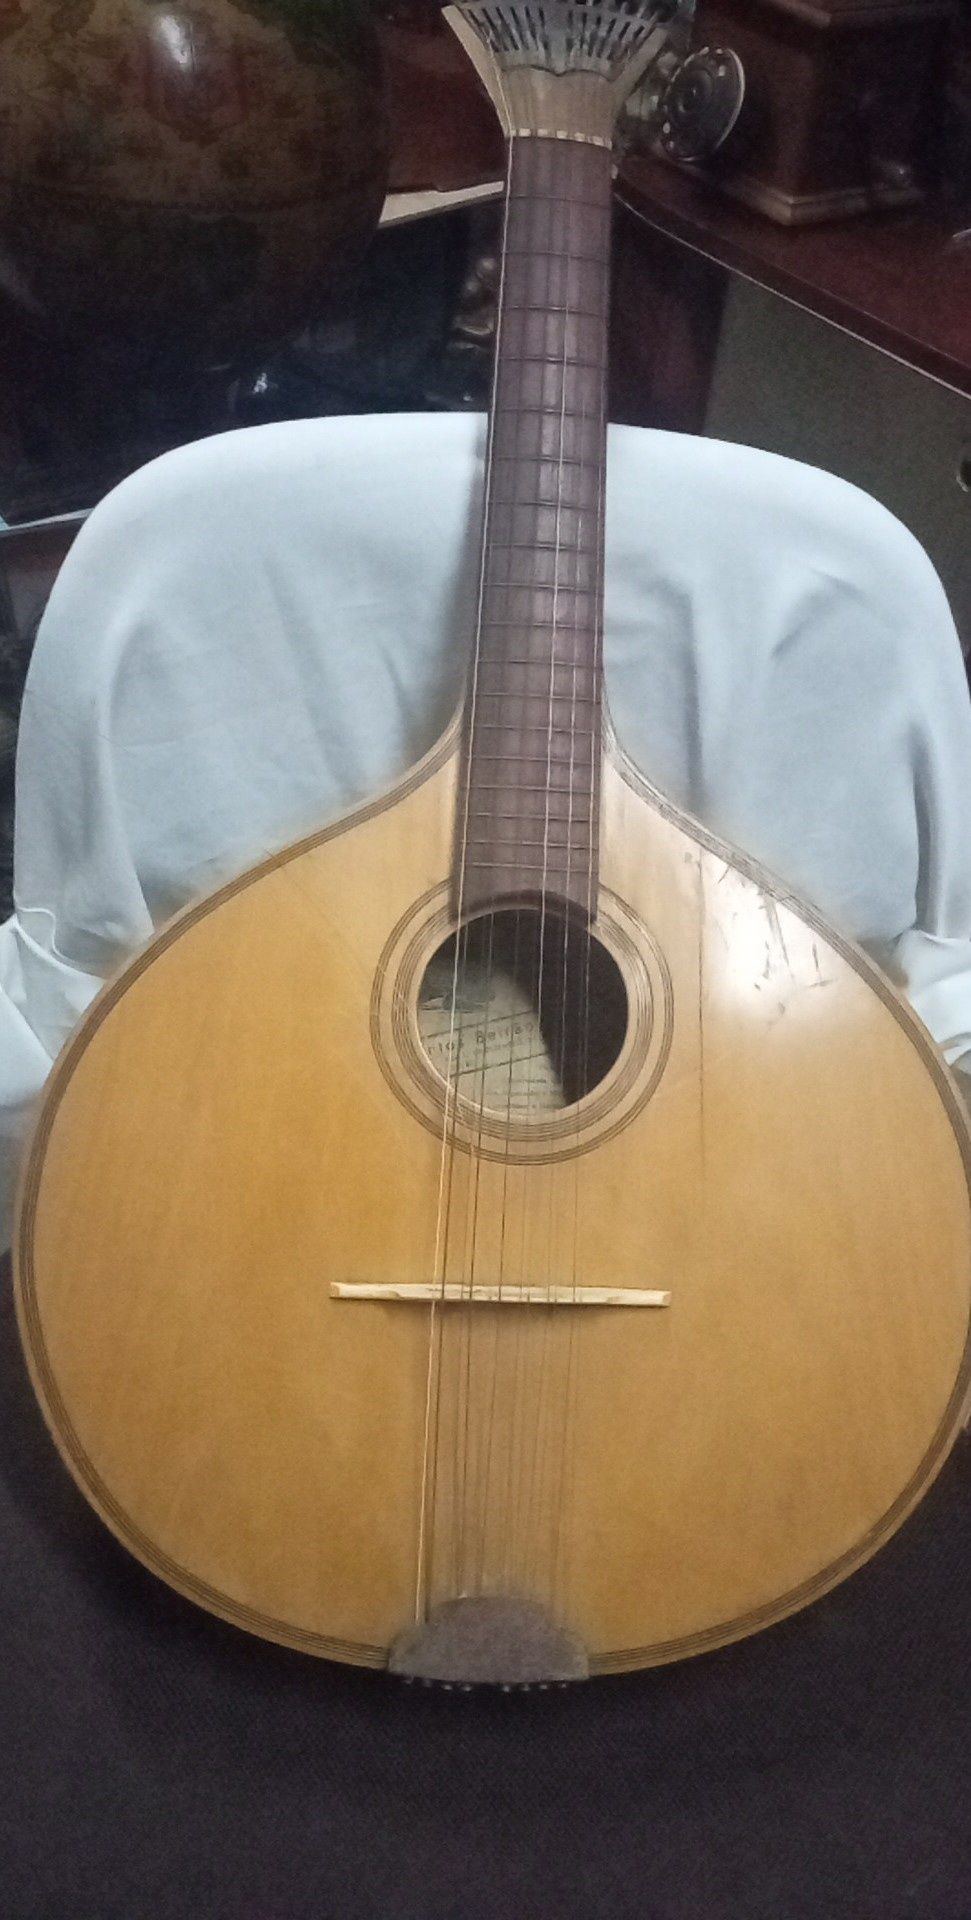 Instrumentos musicais. Concertina, cavaquinho guitarra portuguesa.